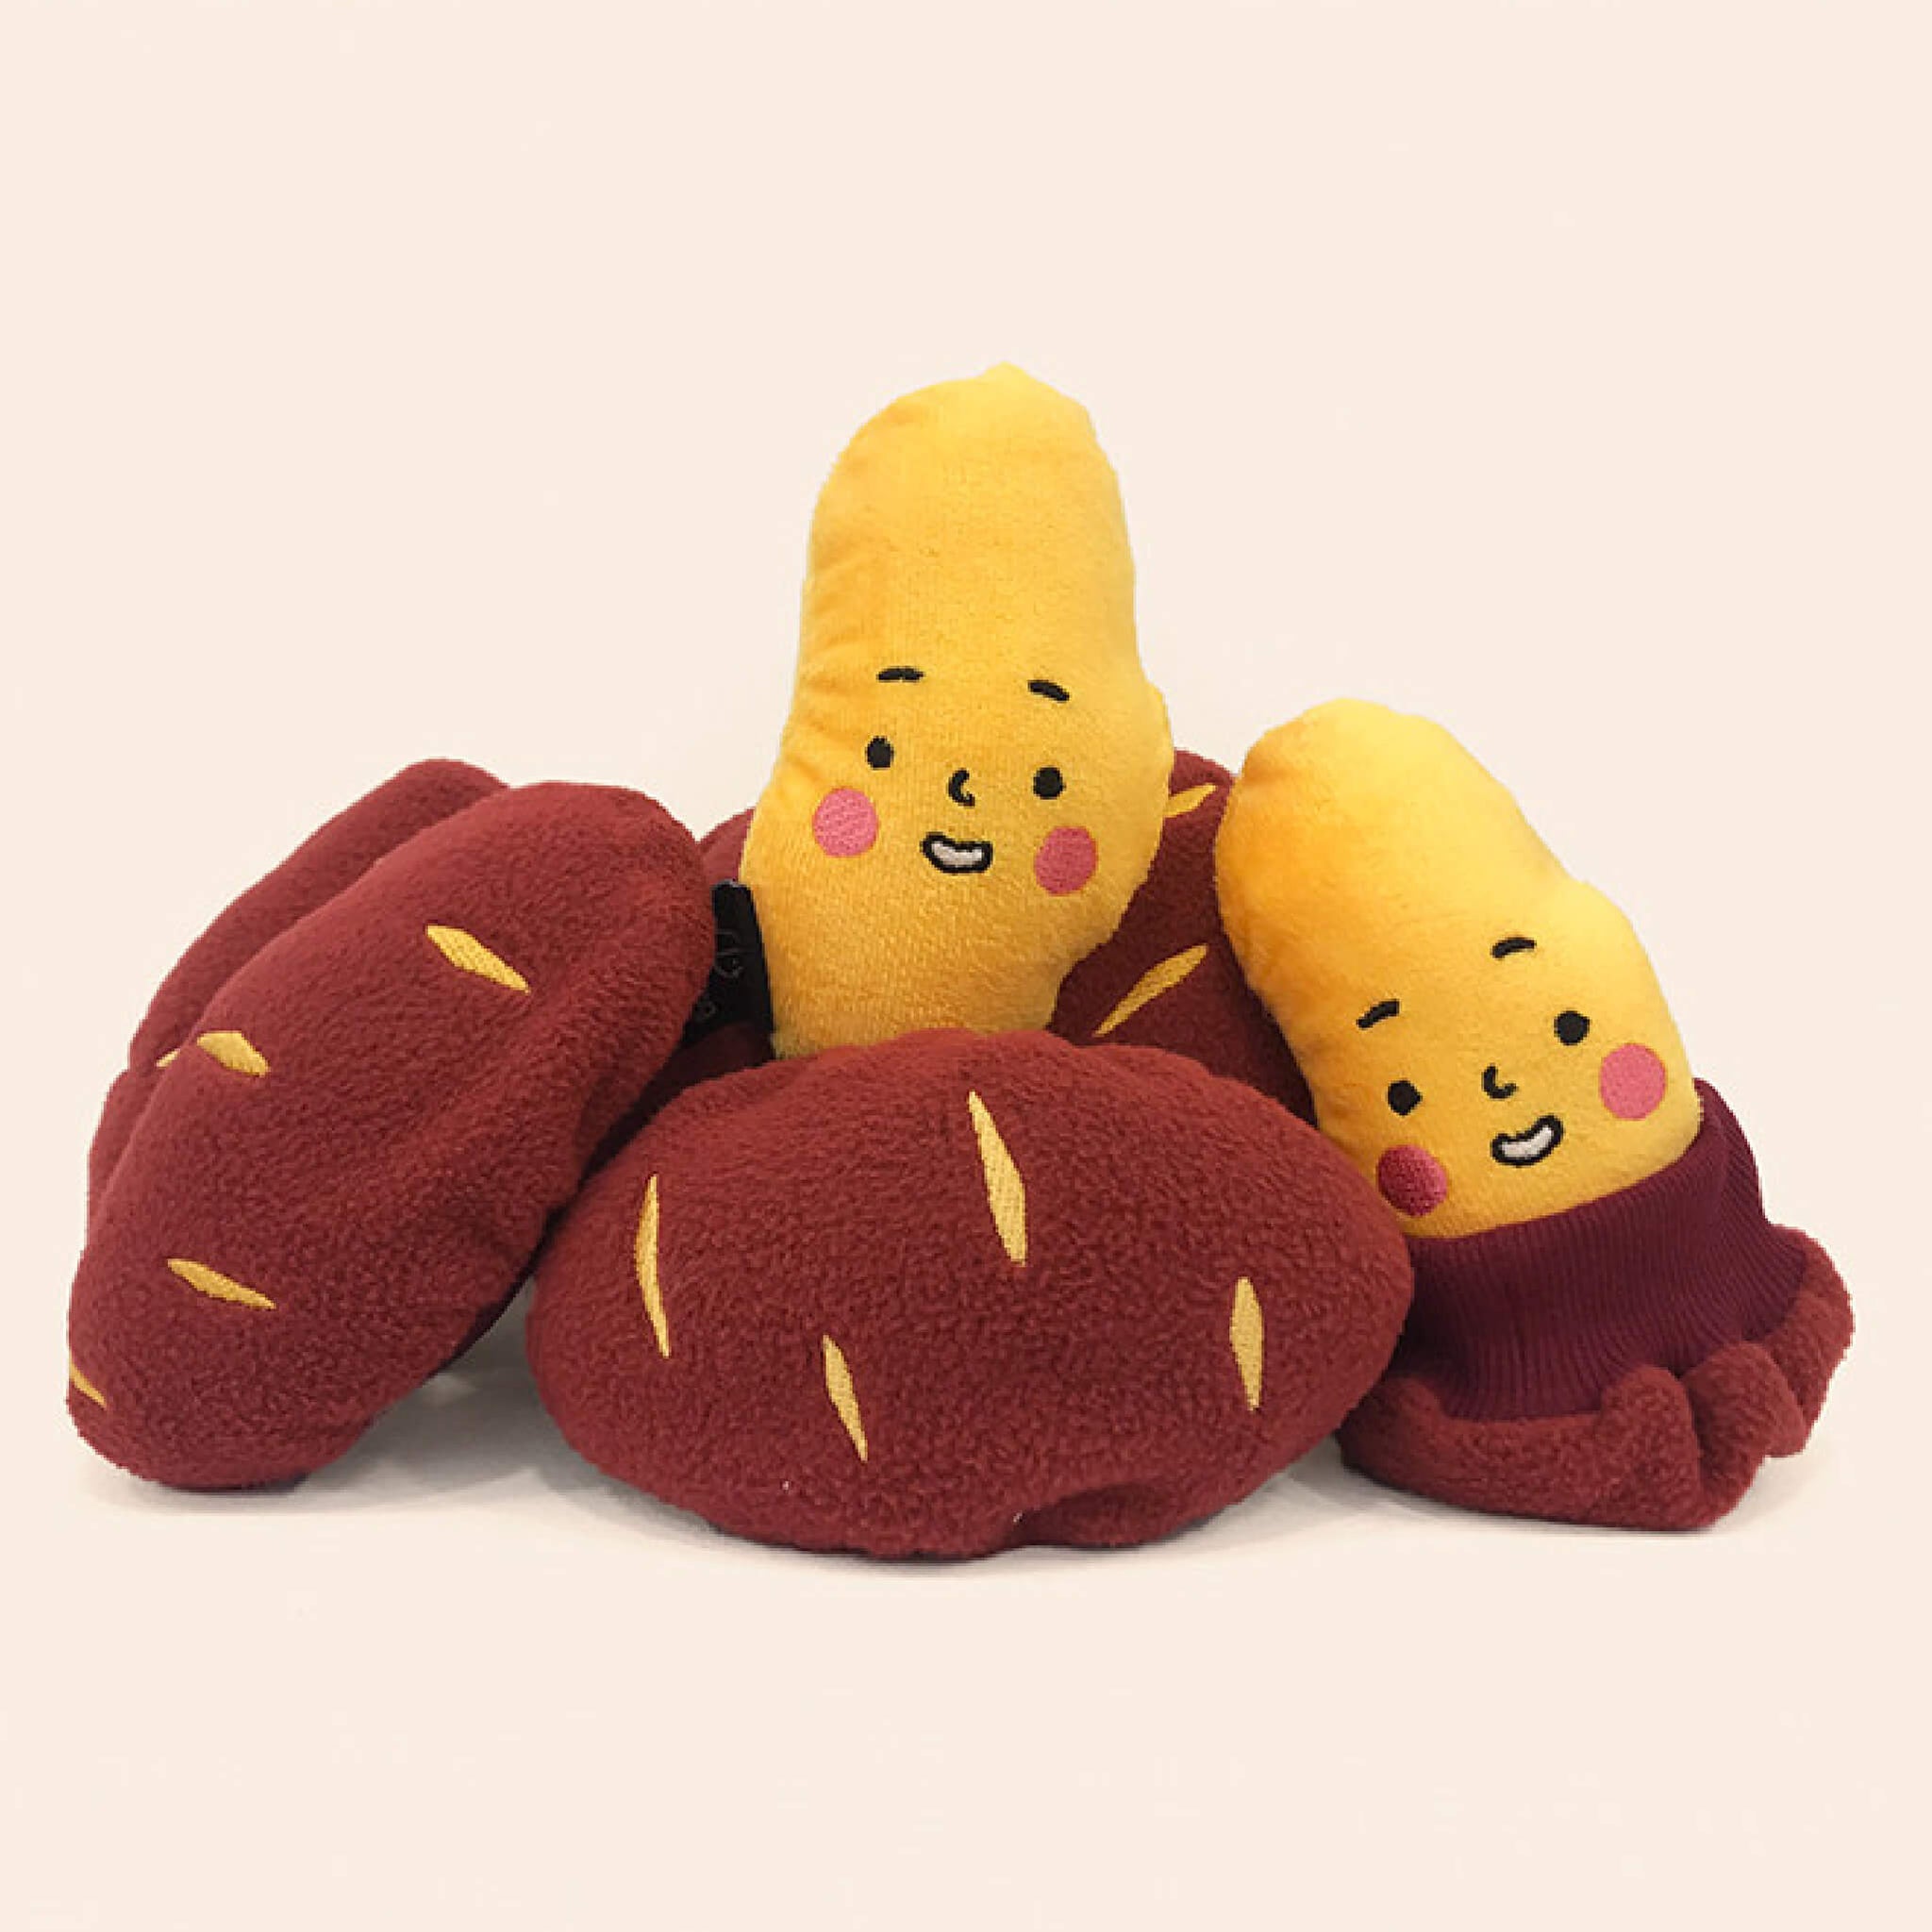 Sweet Potato Plush Toy